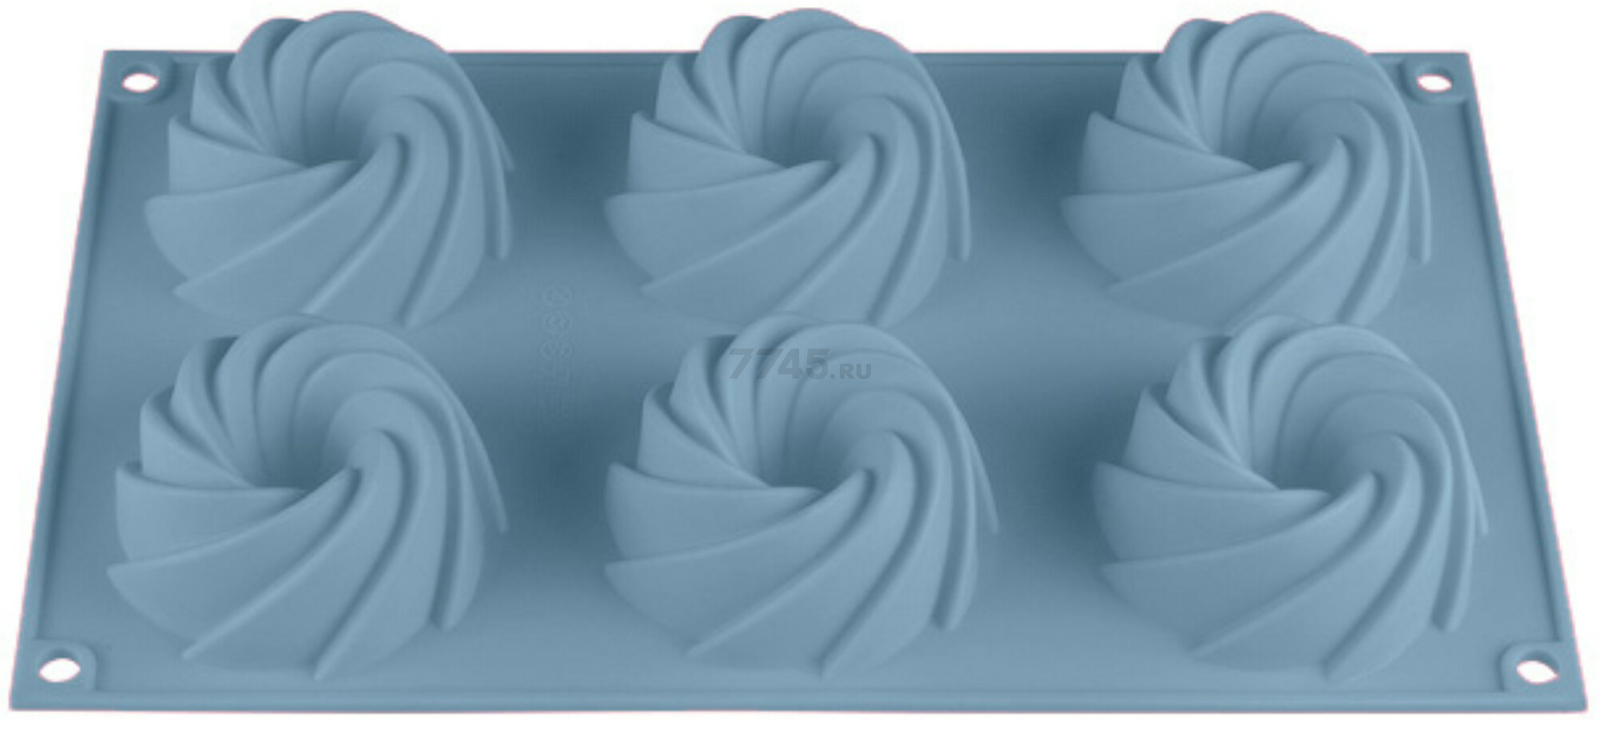 Форма для выпечки силиконовая прямоугольная на 6 кексов 29,2х17,3х3,5 см PERFECTO LINEA Bluestone голубая (20-105228)